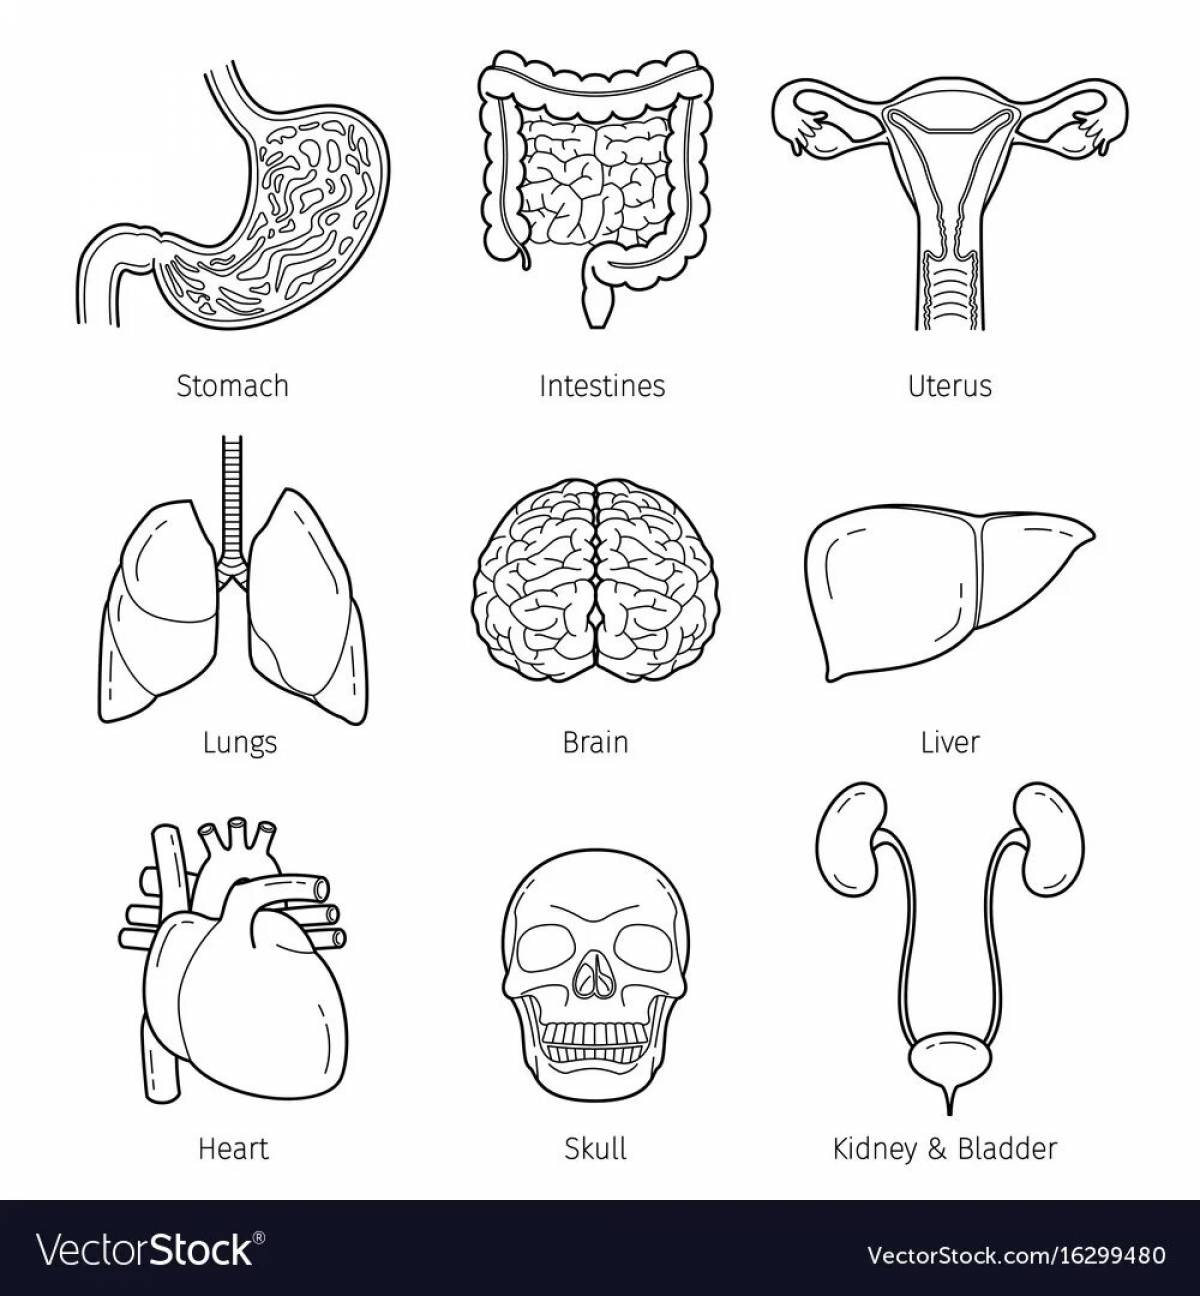 Human structure internal organs #14